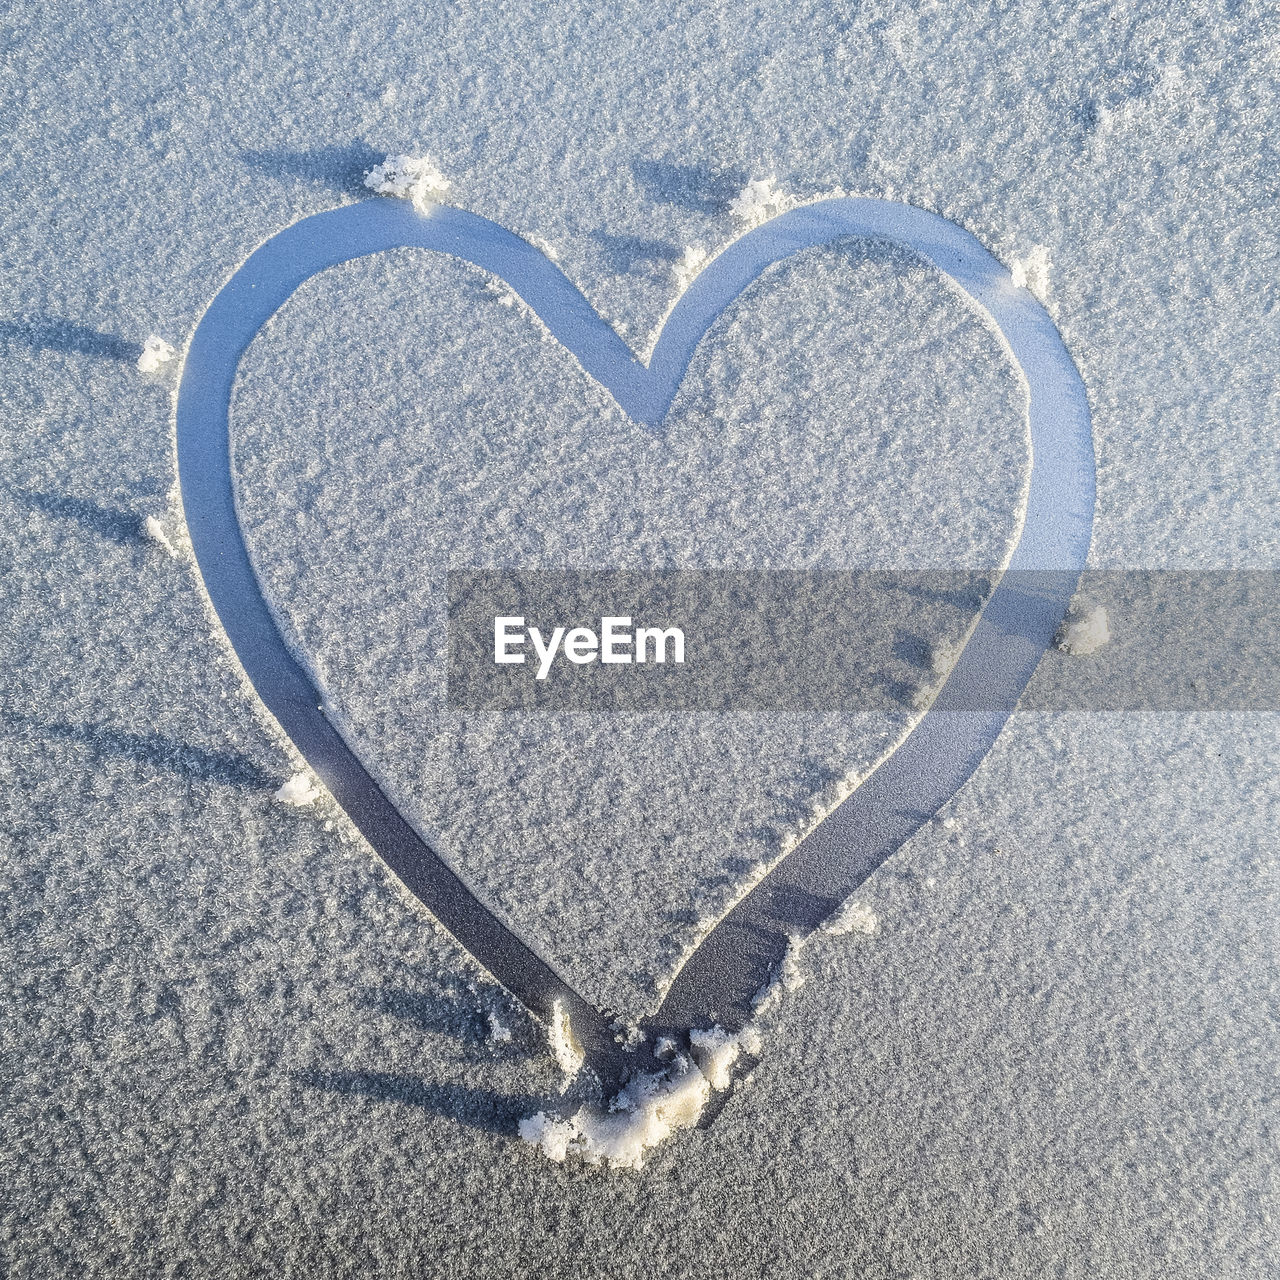 Heart shape on snow